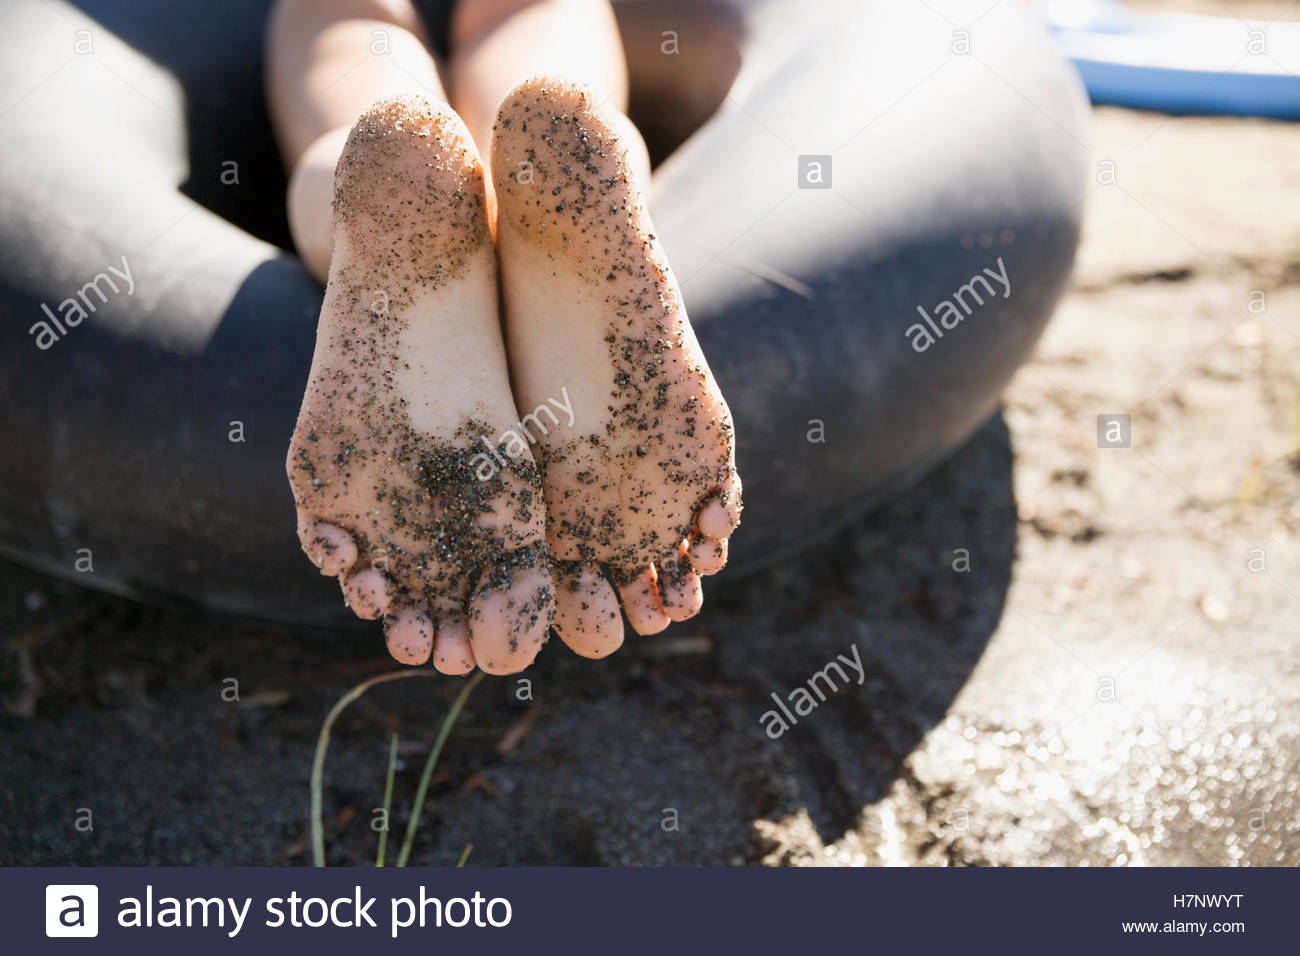 Barfuß Teenager Mädchen Mit Sand Auf Füßen Auf Sonnigen Sommerstrand Hautnah Stockfotografie Alamy 